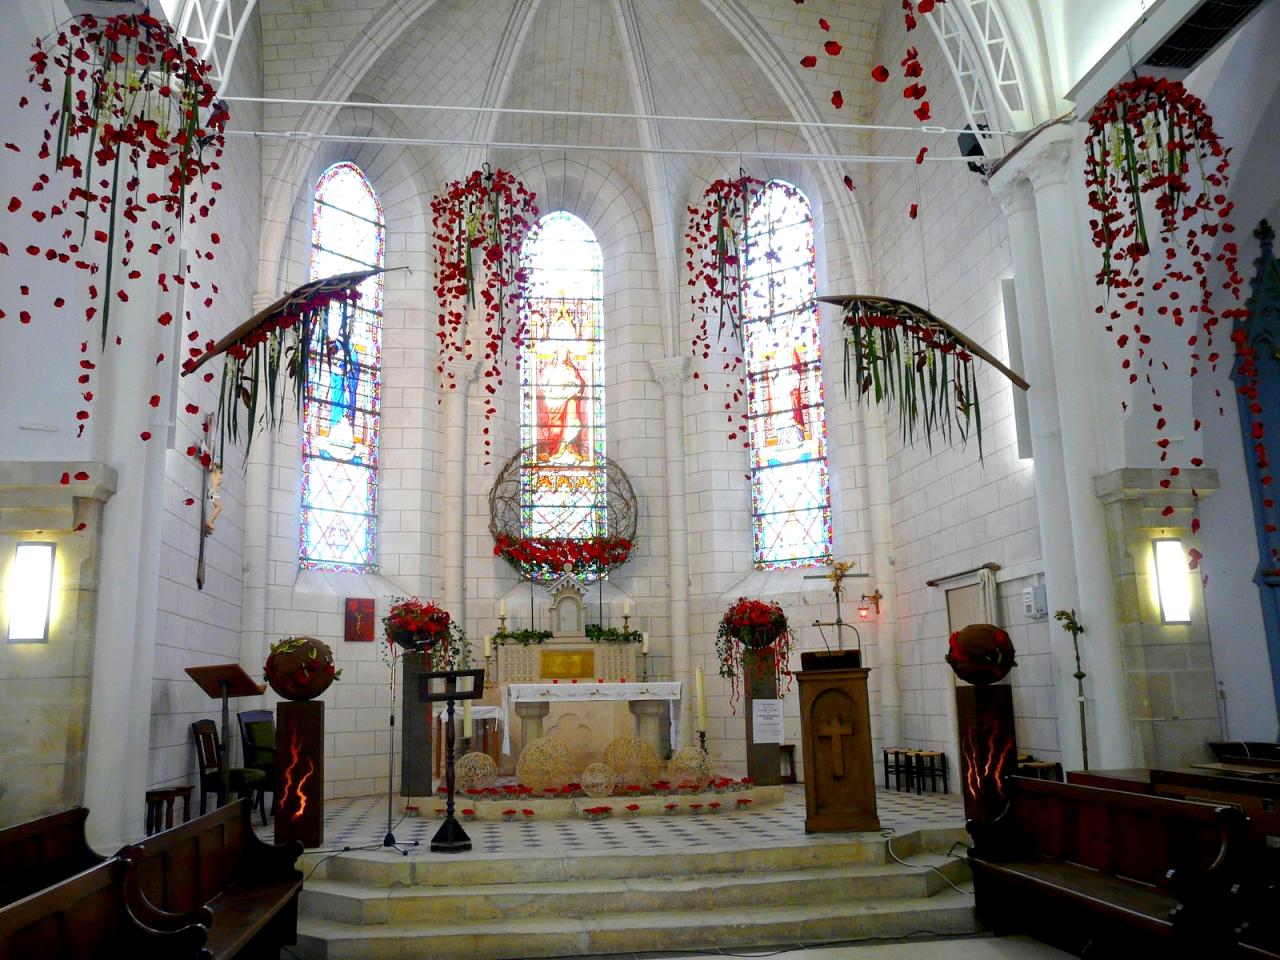 Intérieur de l'église 